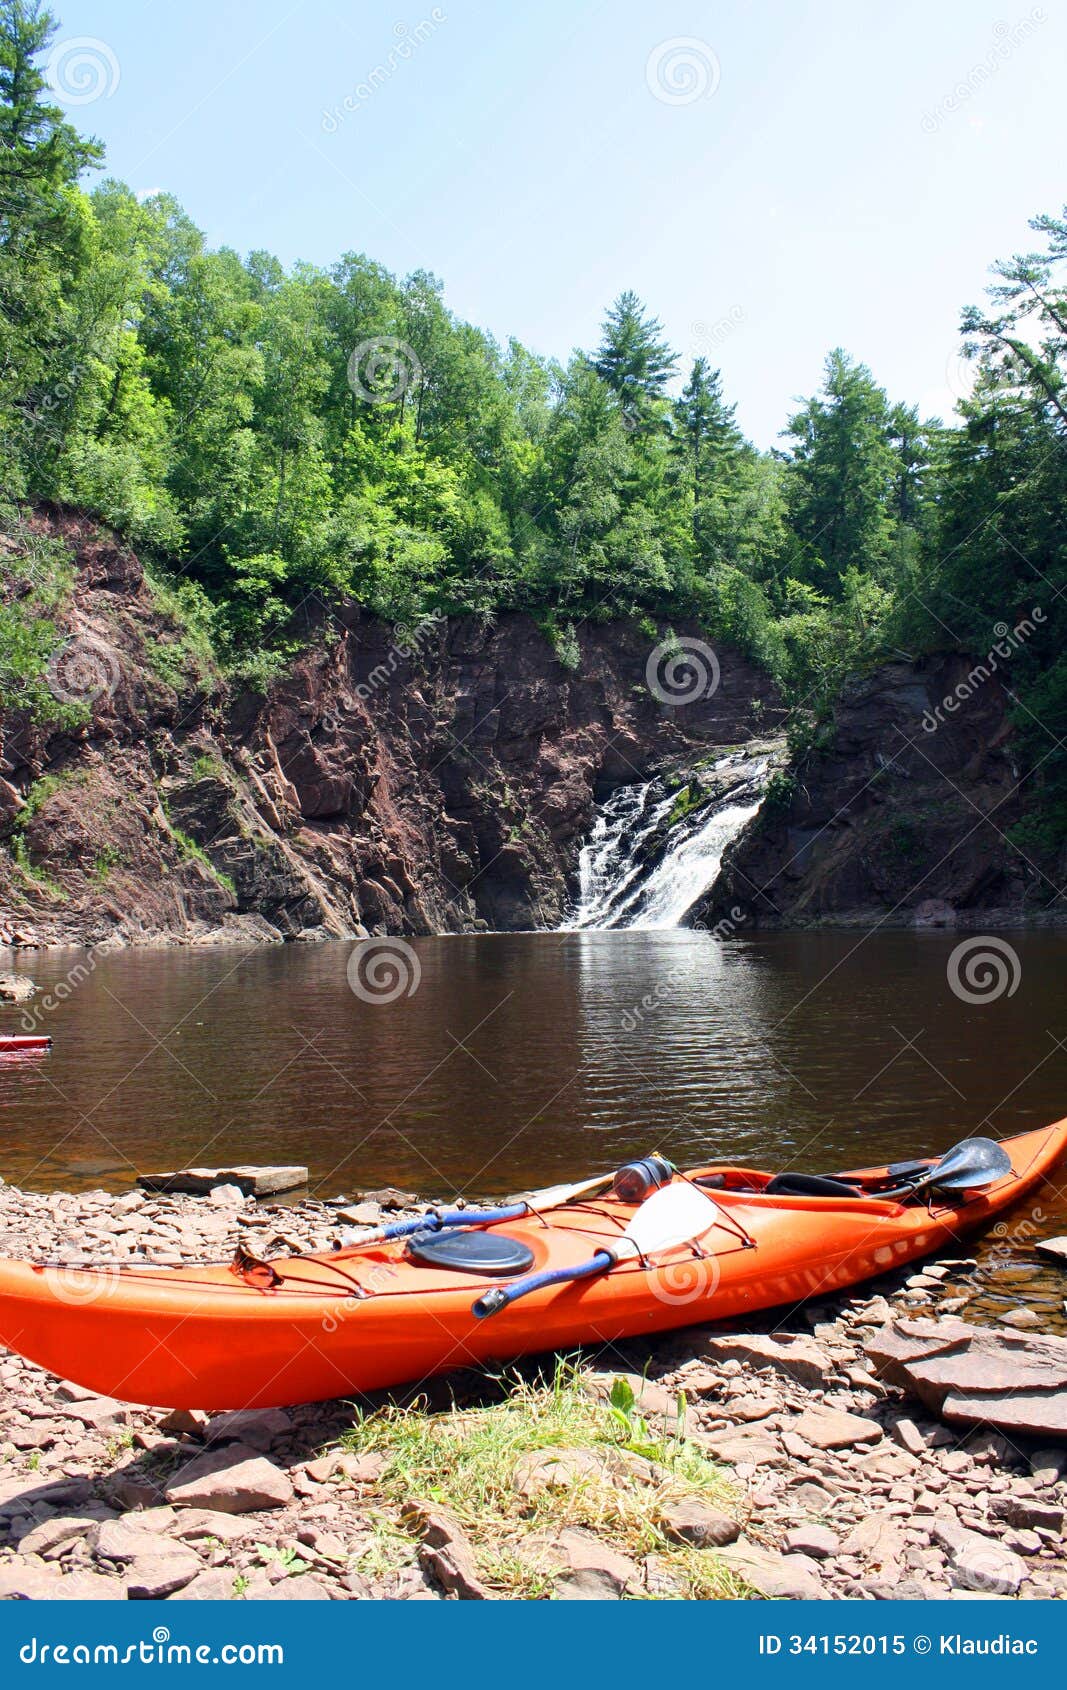 Kayak Royalty Free Stock Photo - Image: 34152015